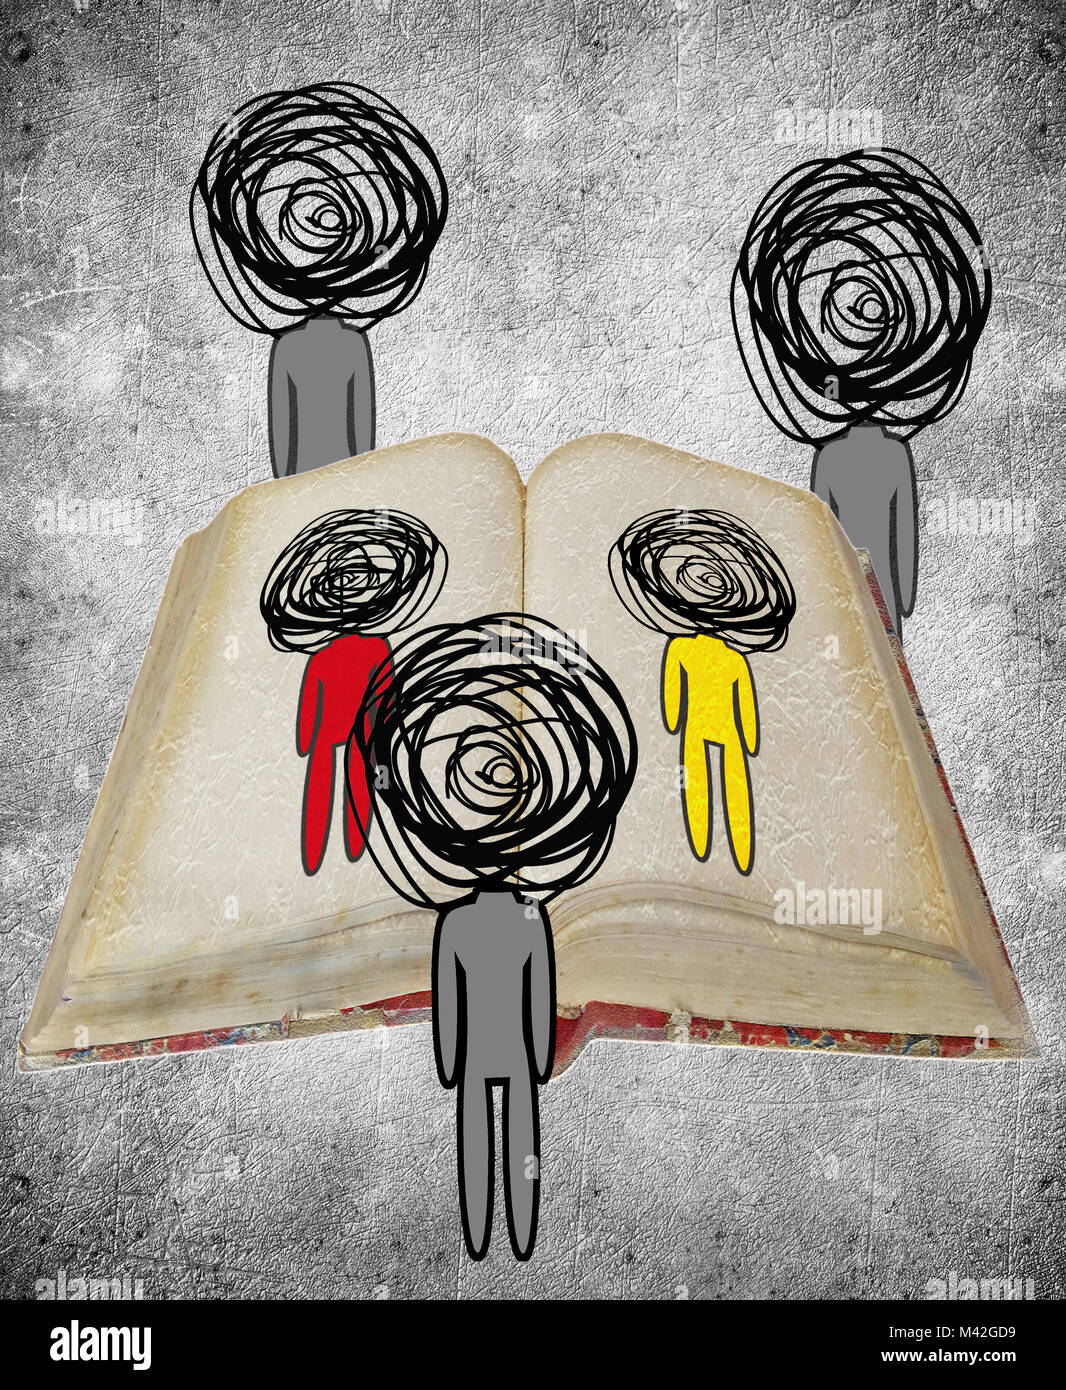 Trois figures humaines regardant un livre digital illustration du concept de connaissance Banque D'Images